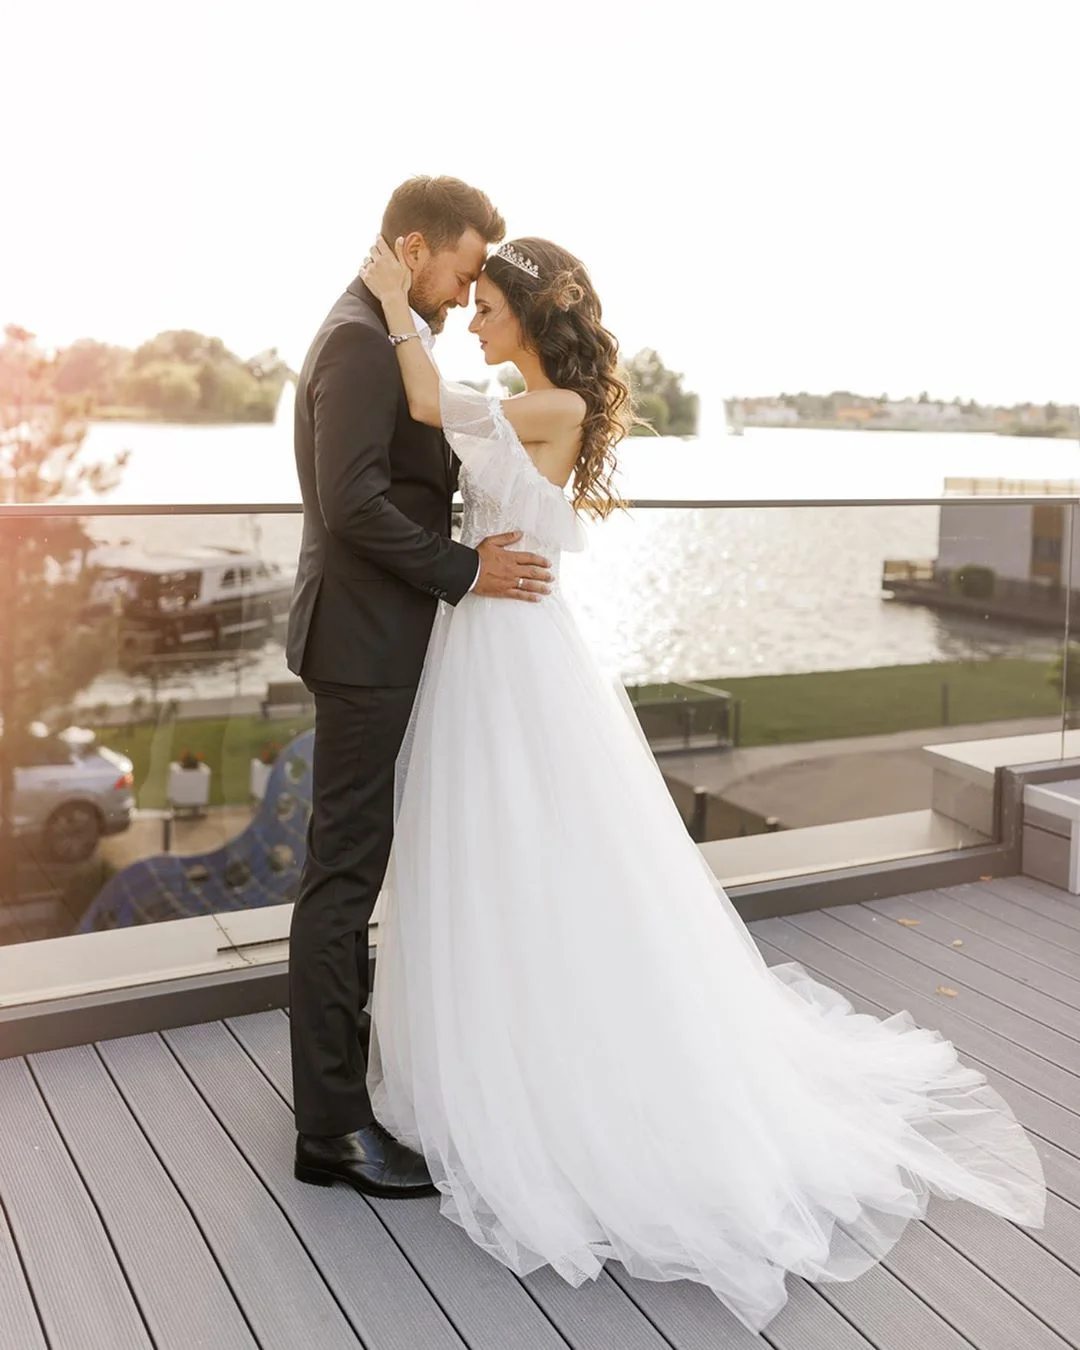 Тимур Мирошниченко с любимой снялись в свадебной фотосессии через два года после женитьбы - фото 441151